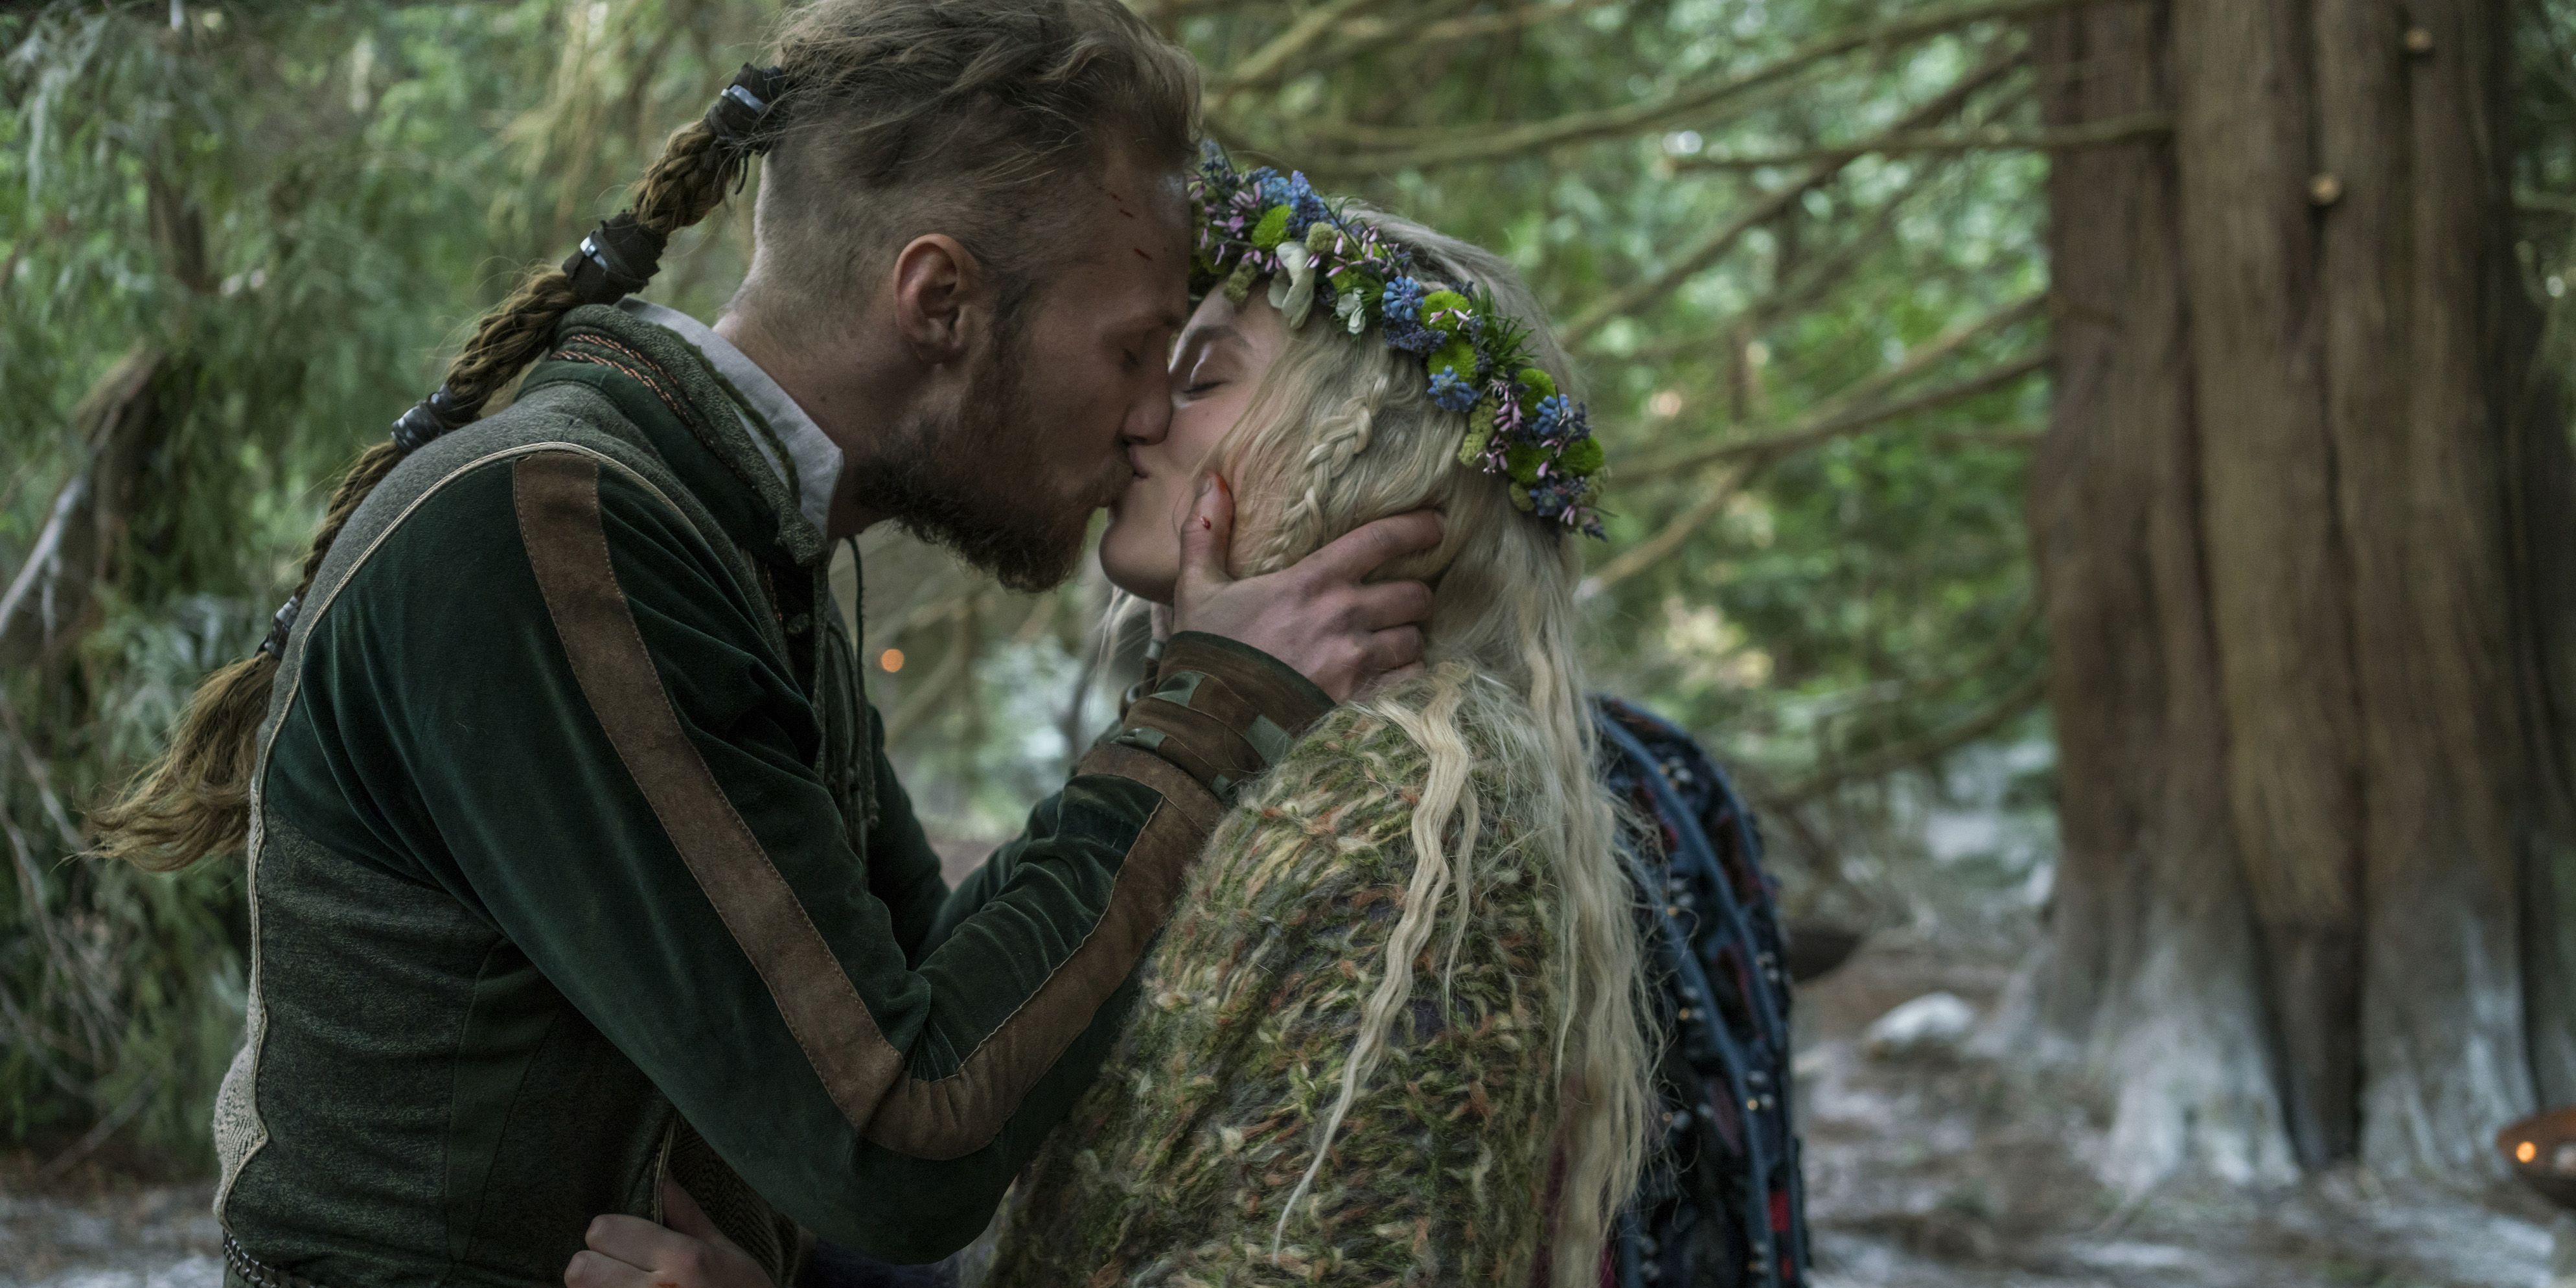 Ubbe weds Aslaug's slave Margrethe in Vikings